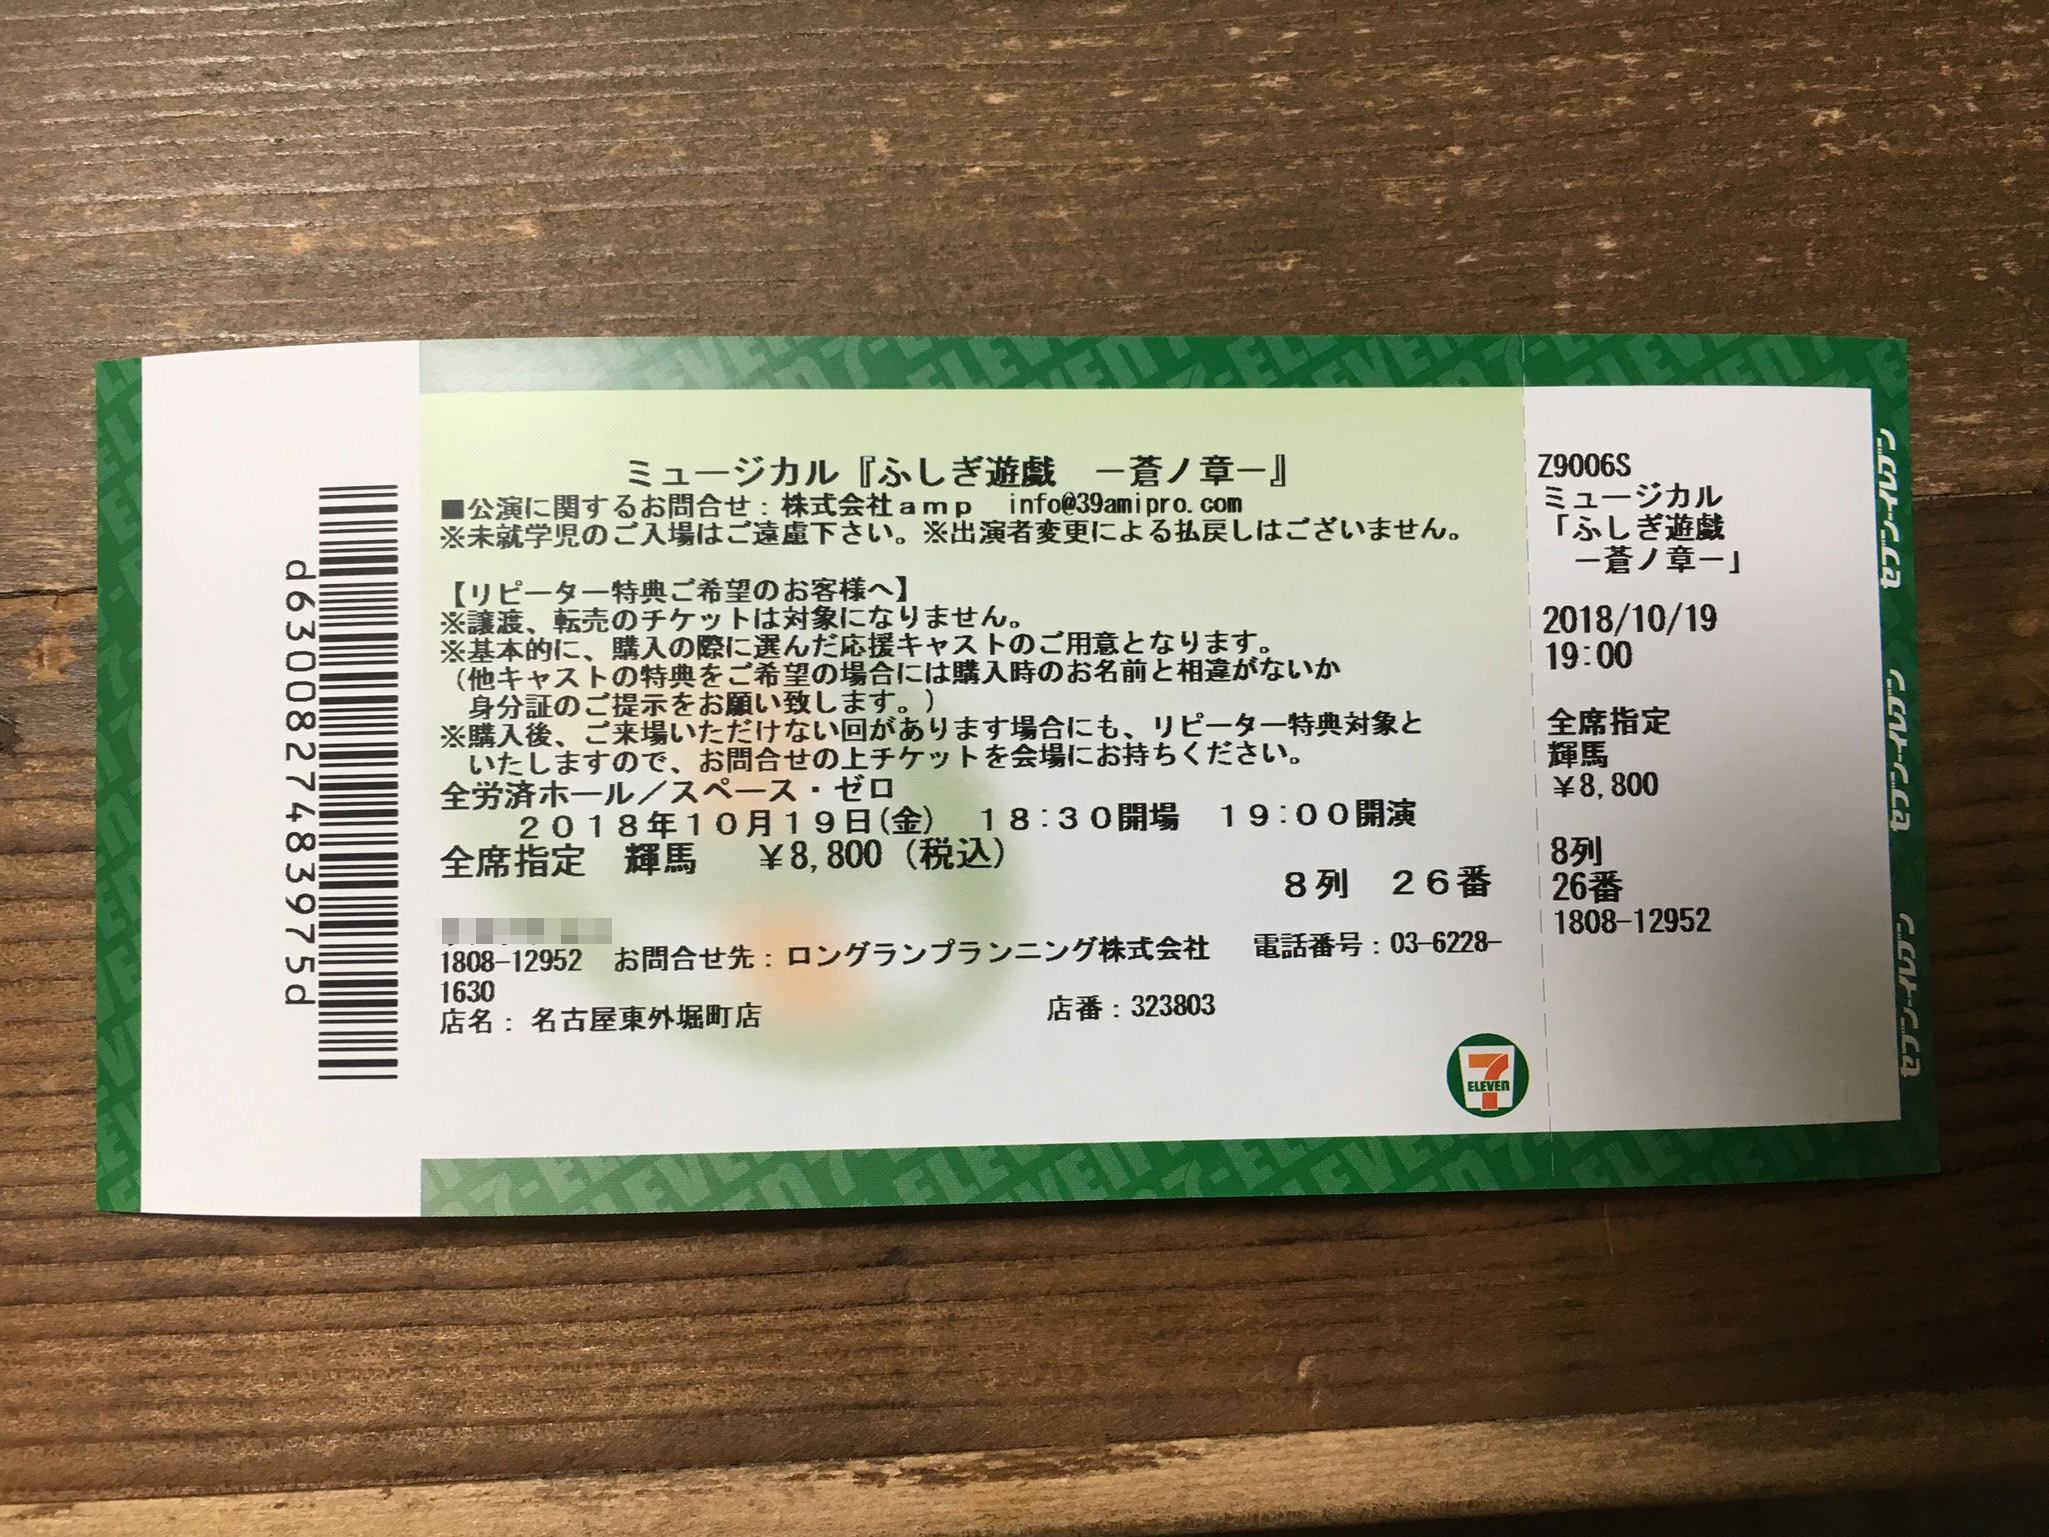 2.5D Musical Fushigi Yugi Ticket